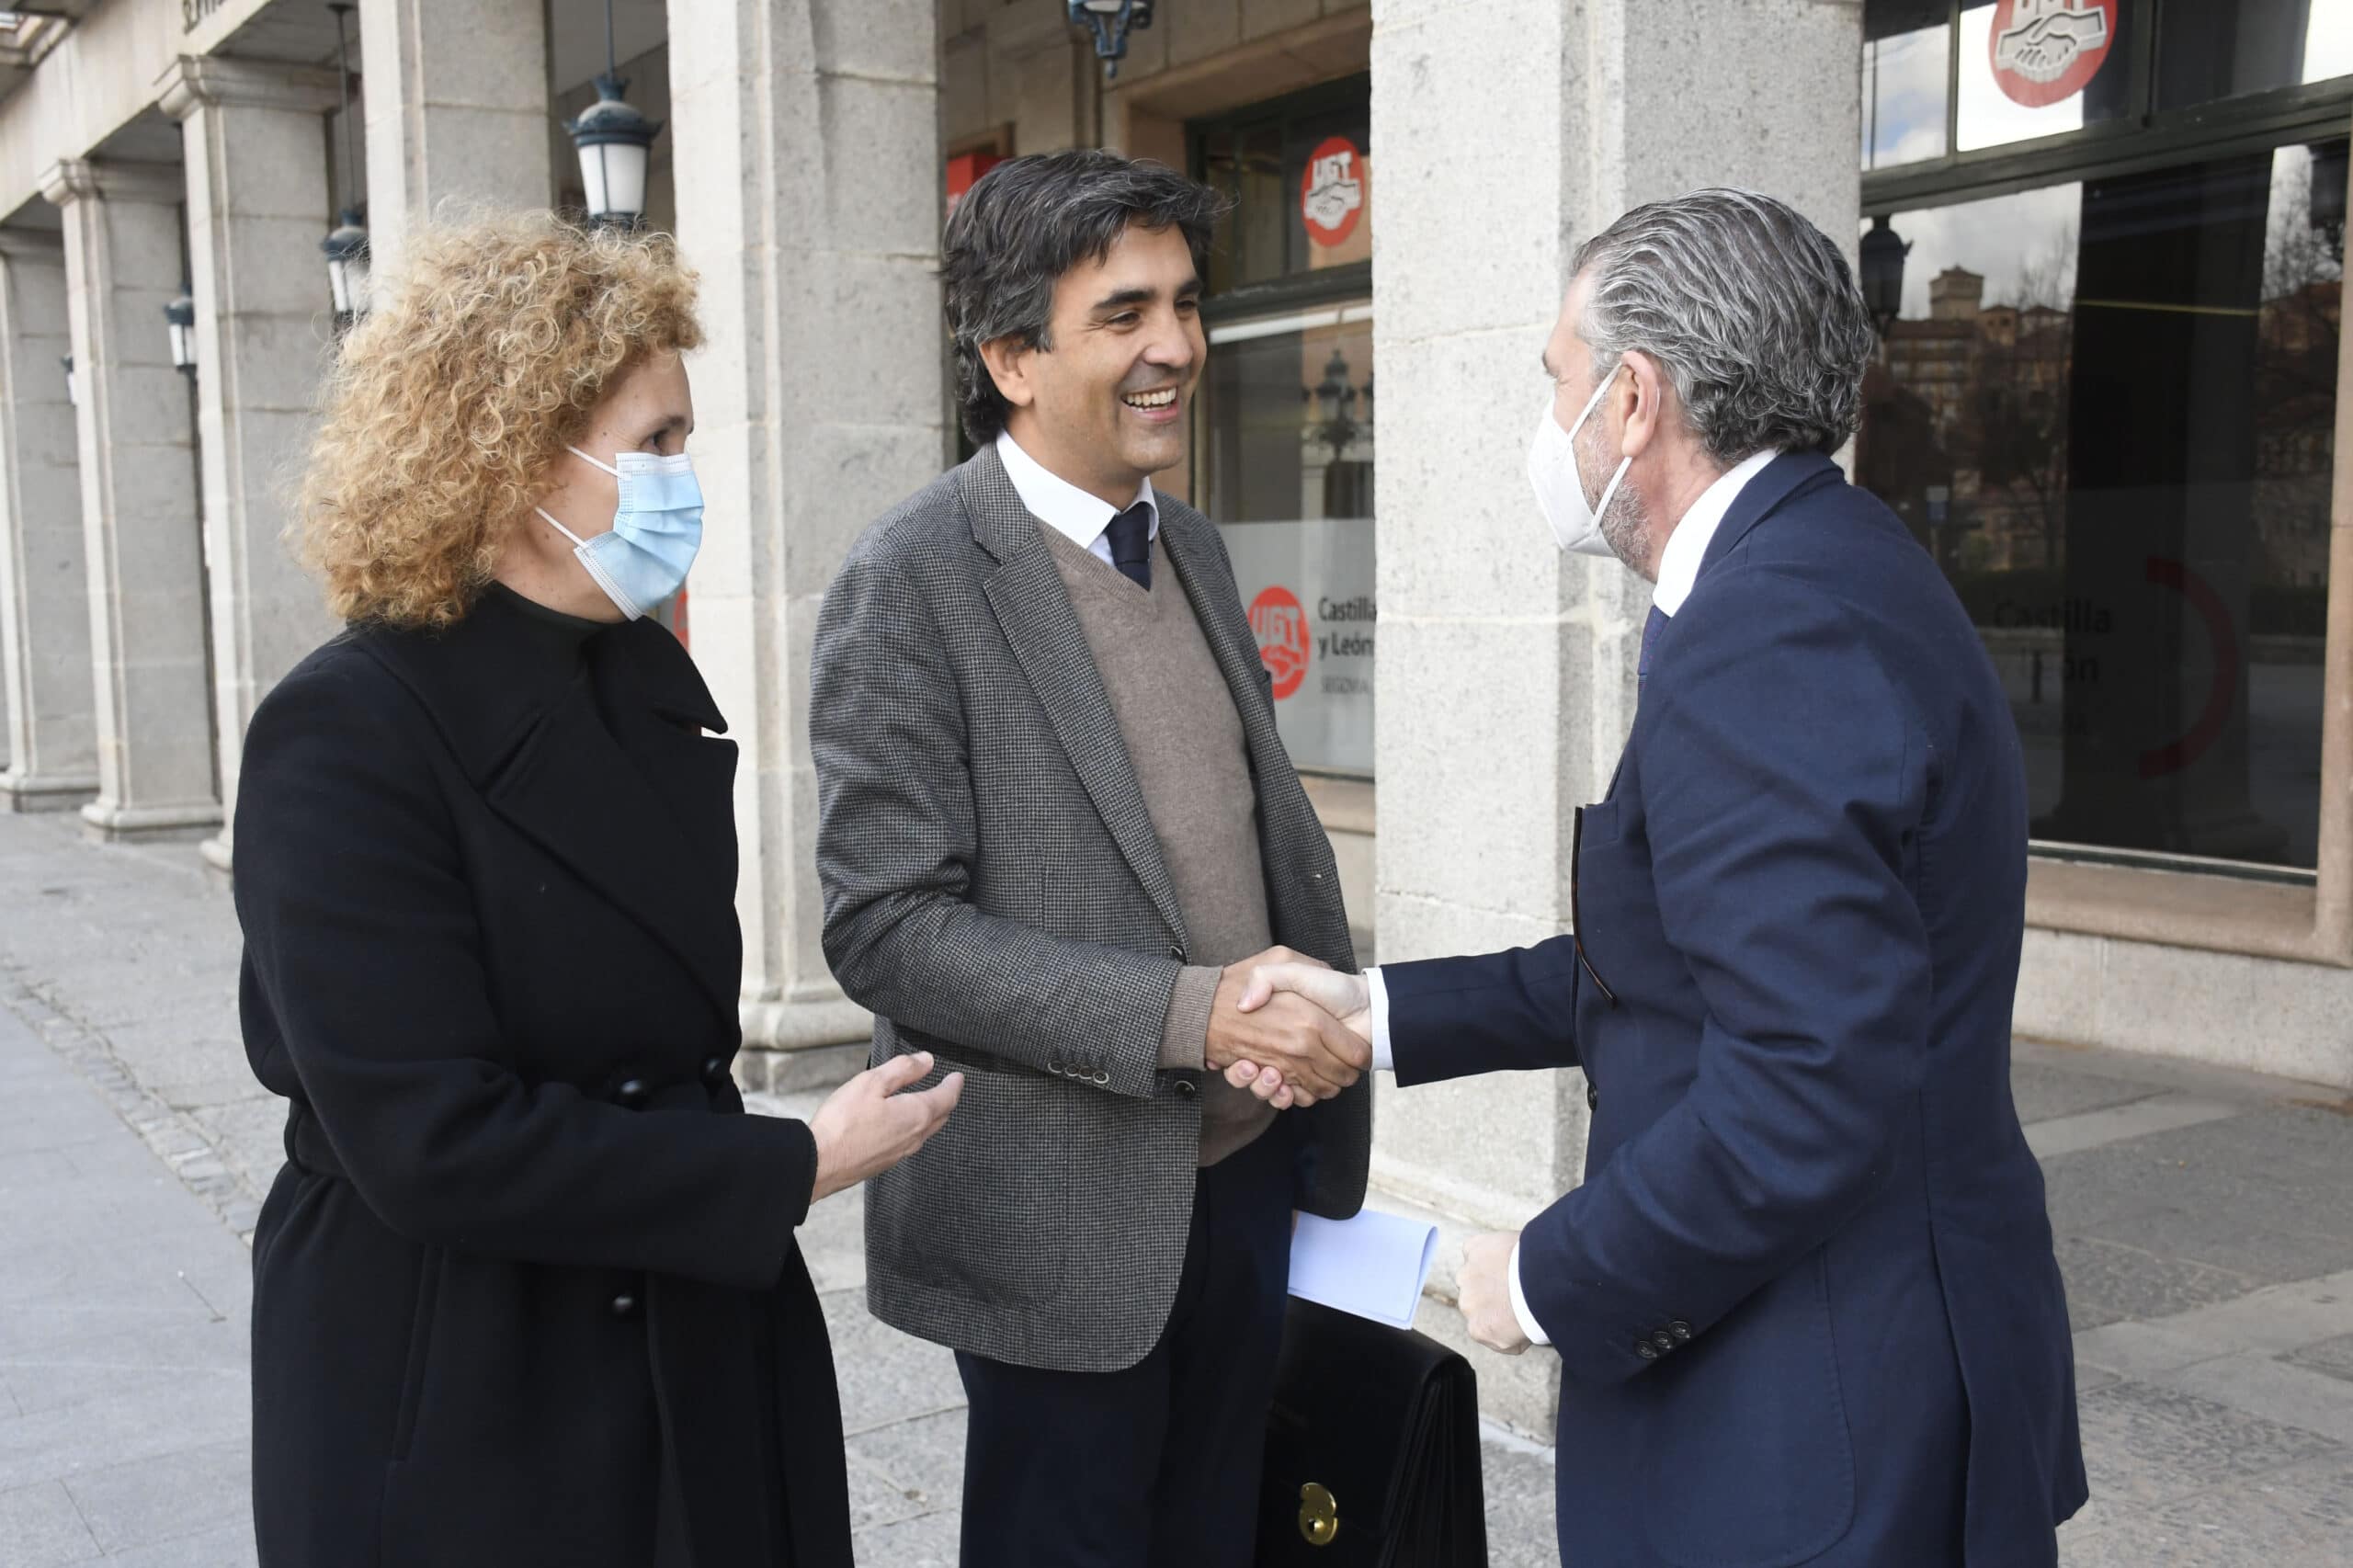 El Ministerio de Economía lanza un mensaje de confianza a los agentes sociales de Segovia